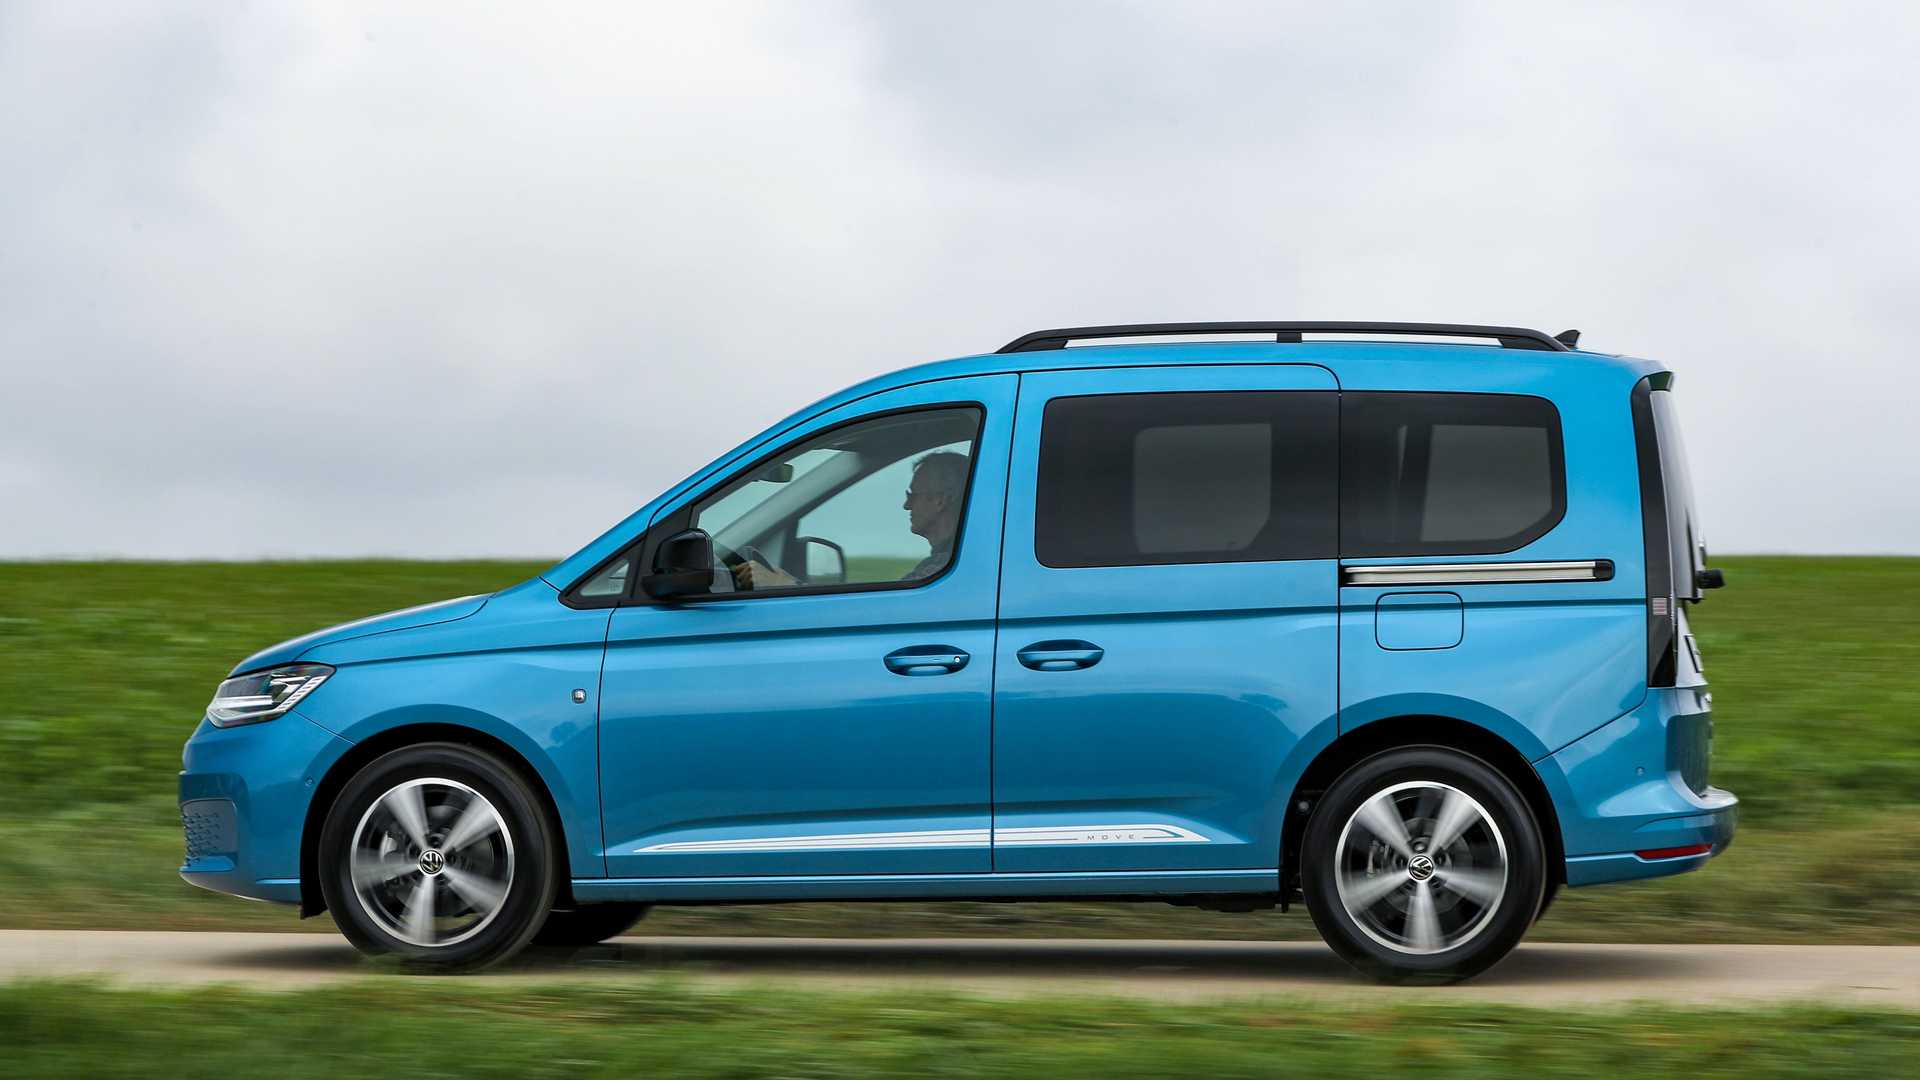 VW Caddy (2021): Neue Generation jetzt im Handel